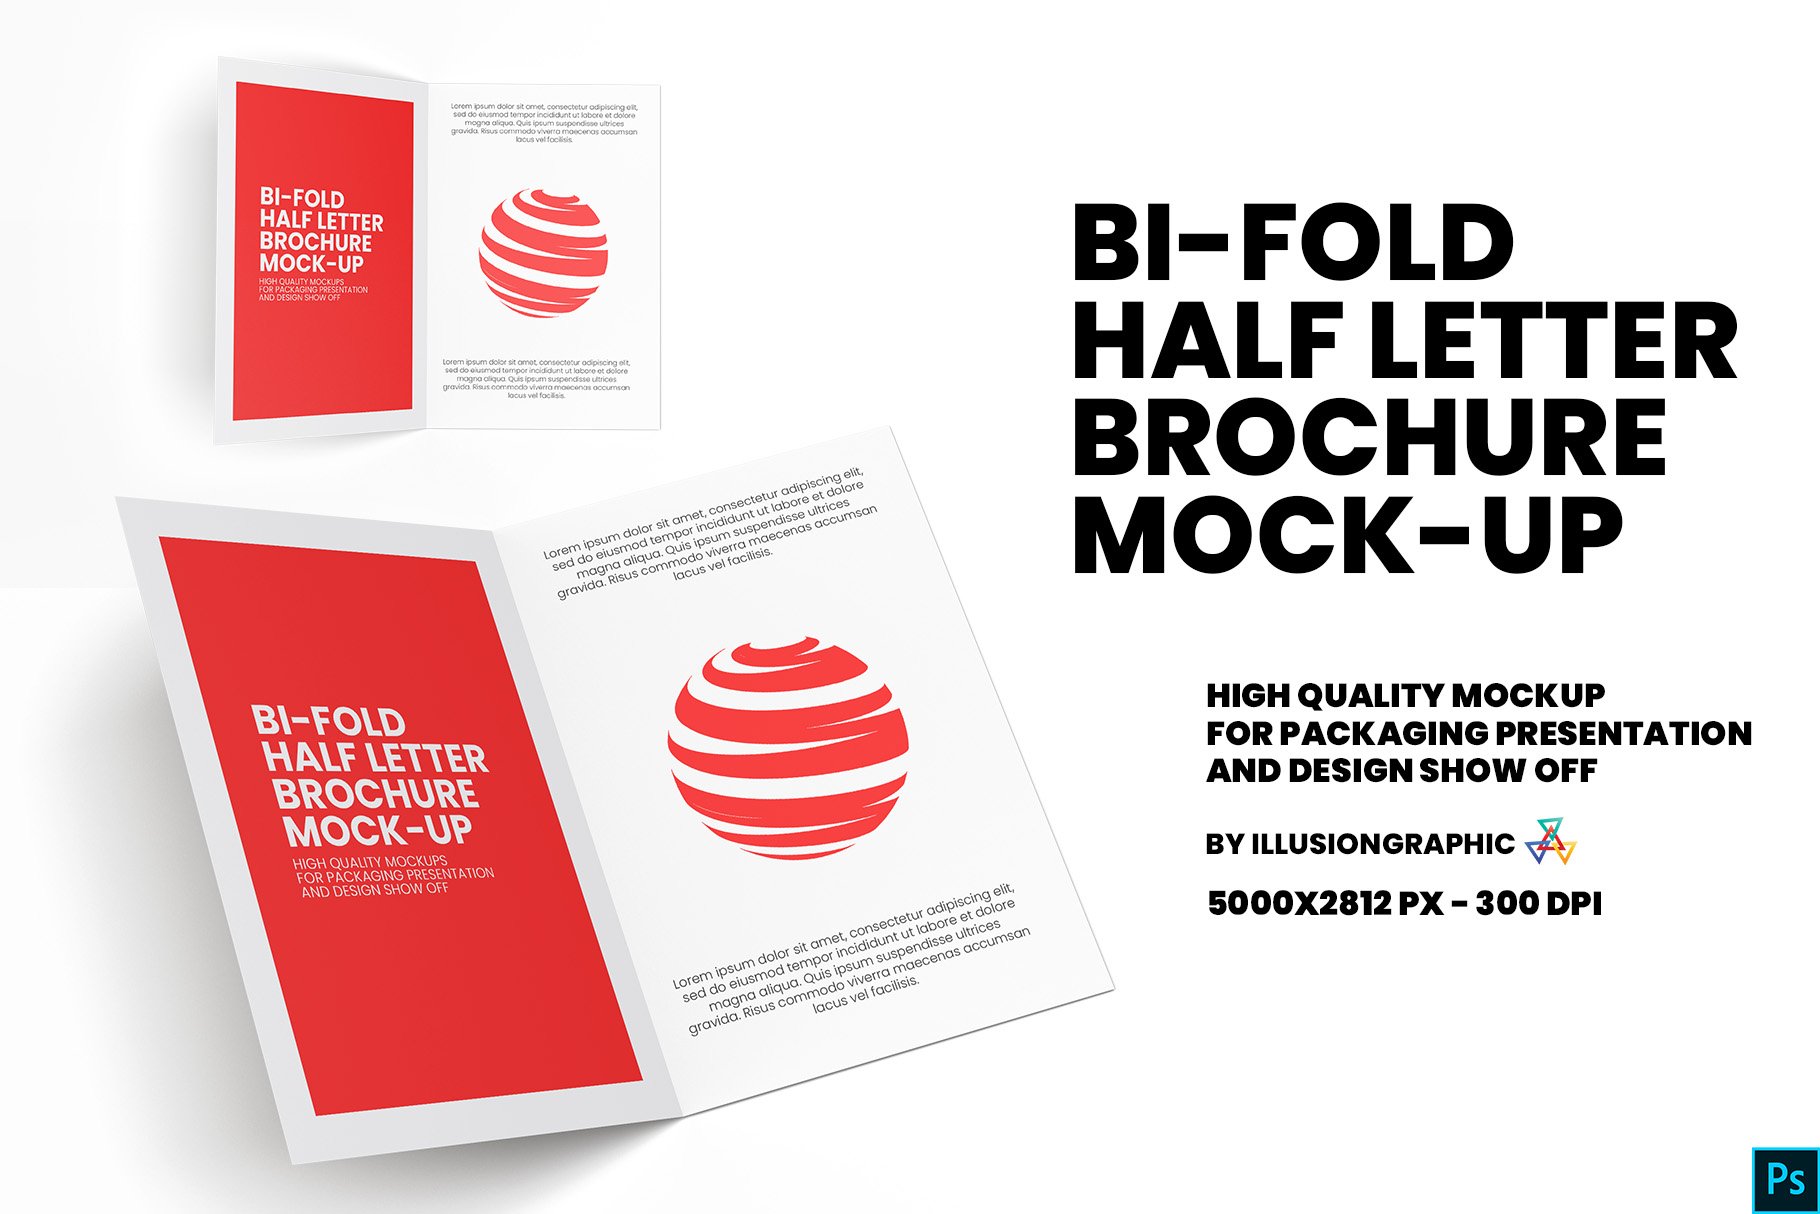 Bi-Fold Half Letter Brochure Mock-up cover image.